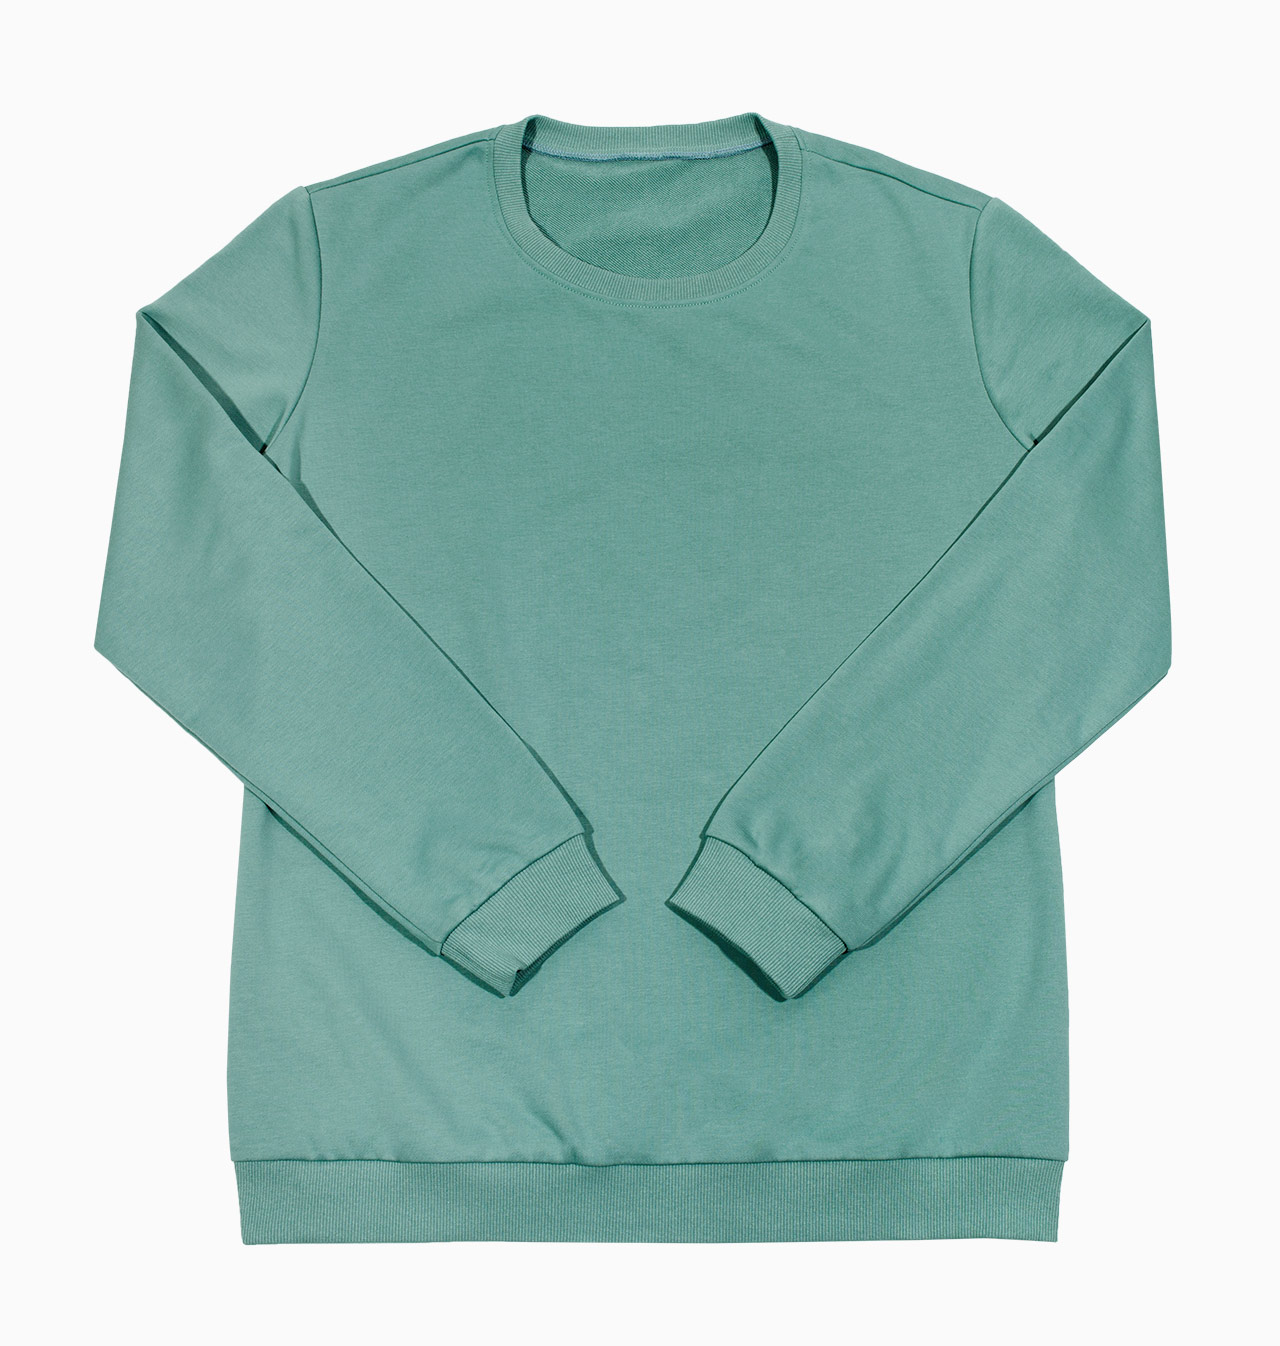 Shirts › Sweatshirt › Faded Aqua / 1782